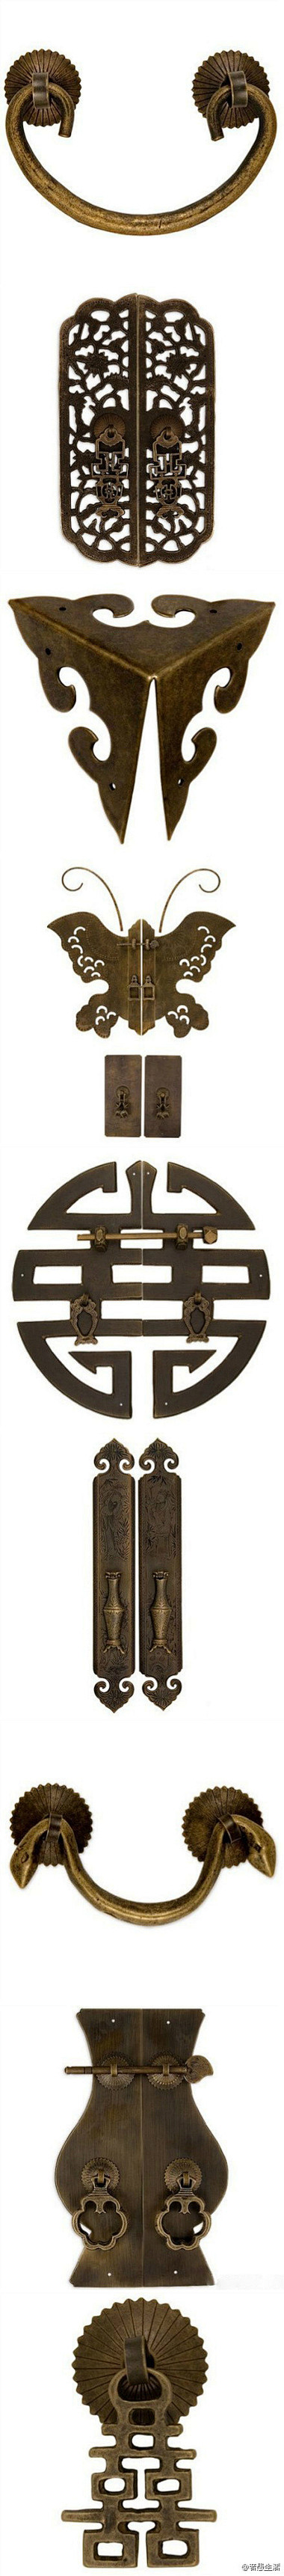 中式古典家具丨配件【锁】欣赏